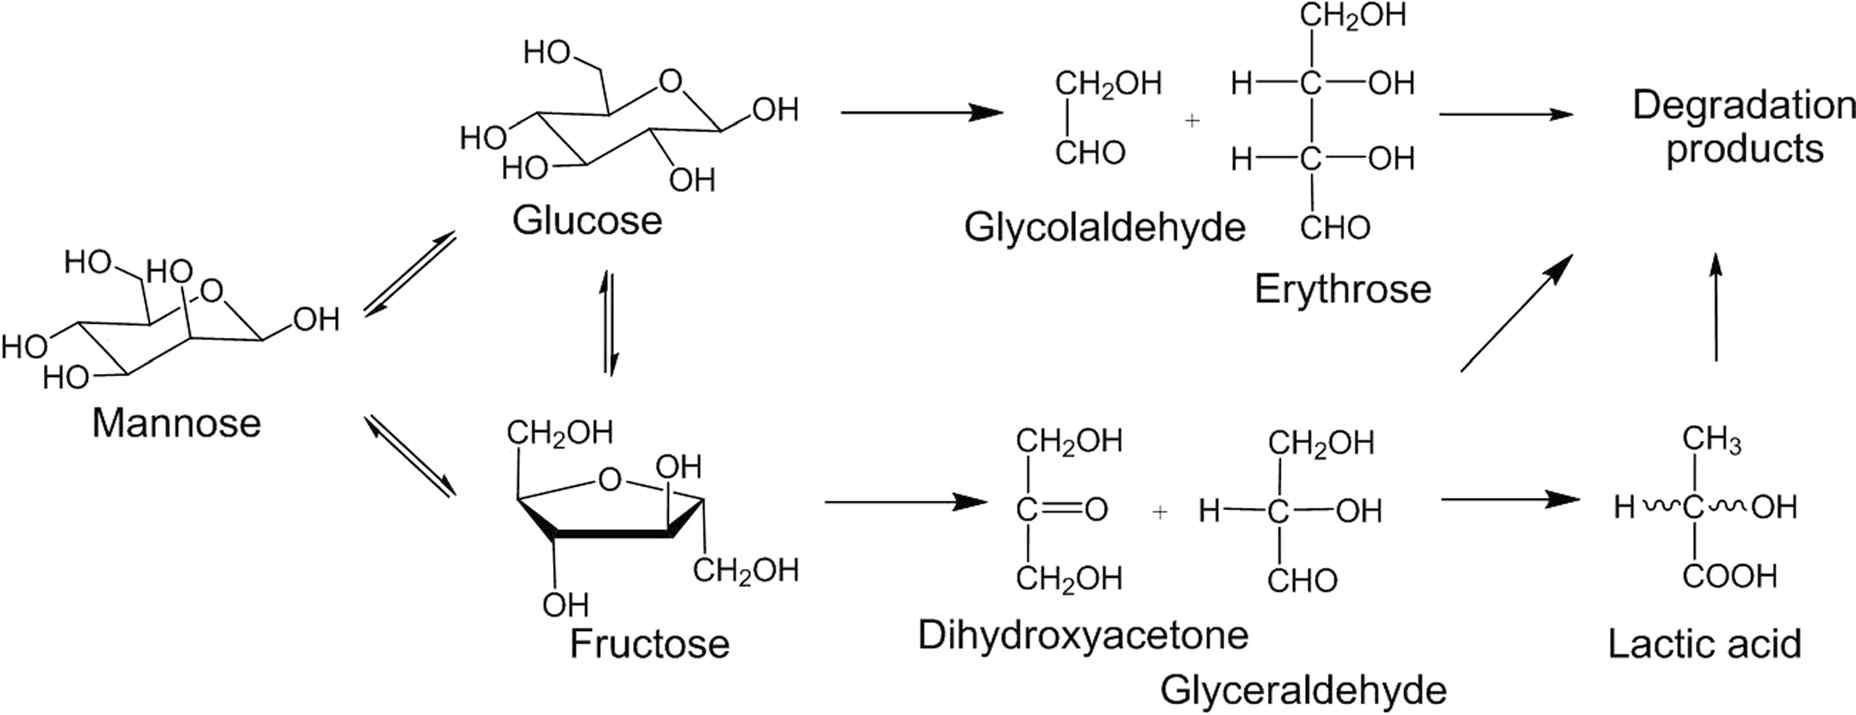 glucose isomerization 반응 경로